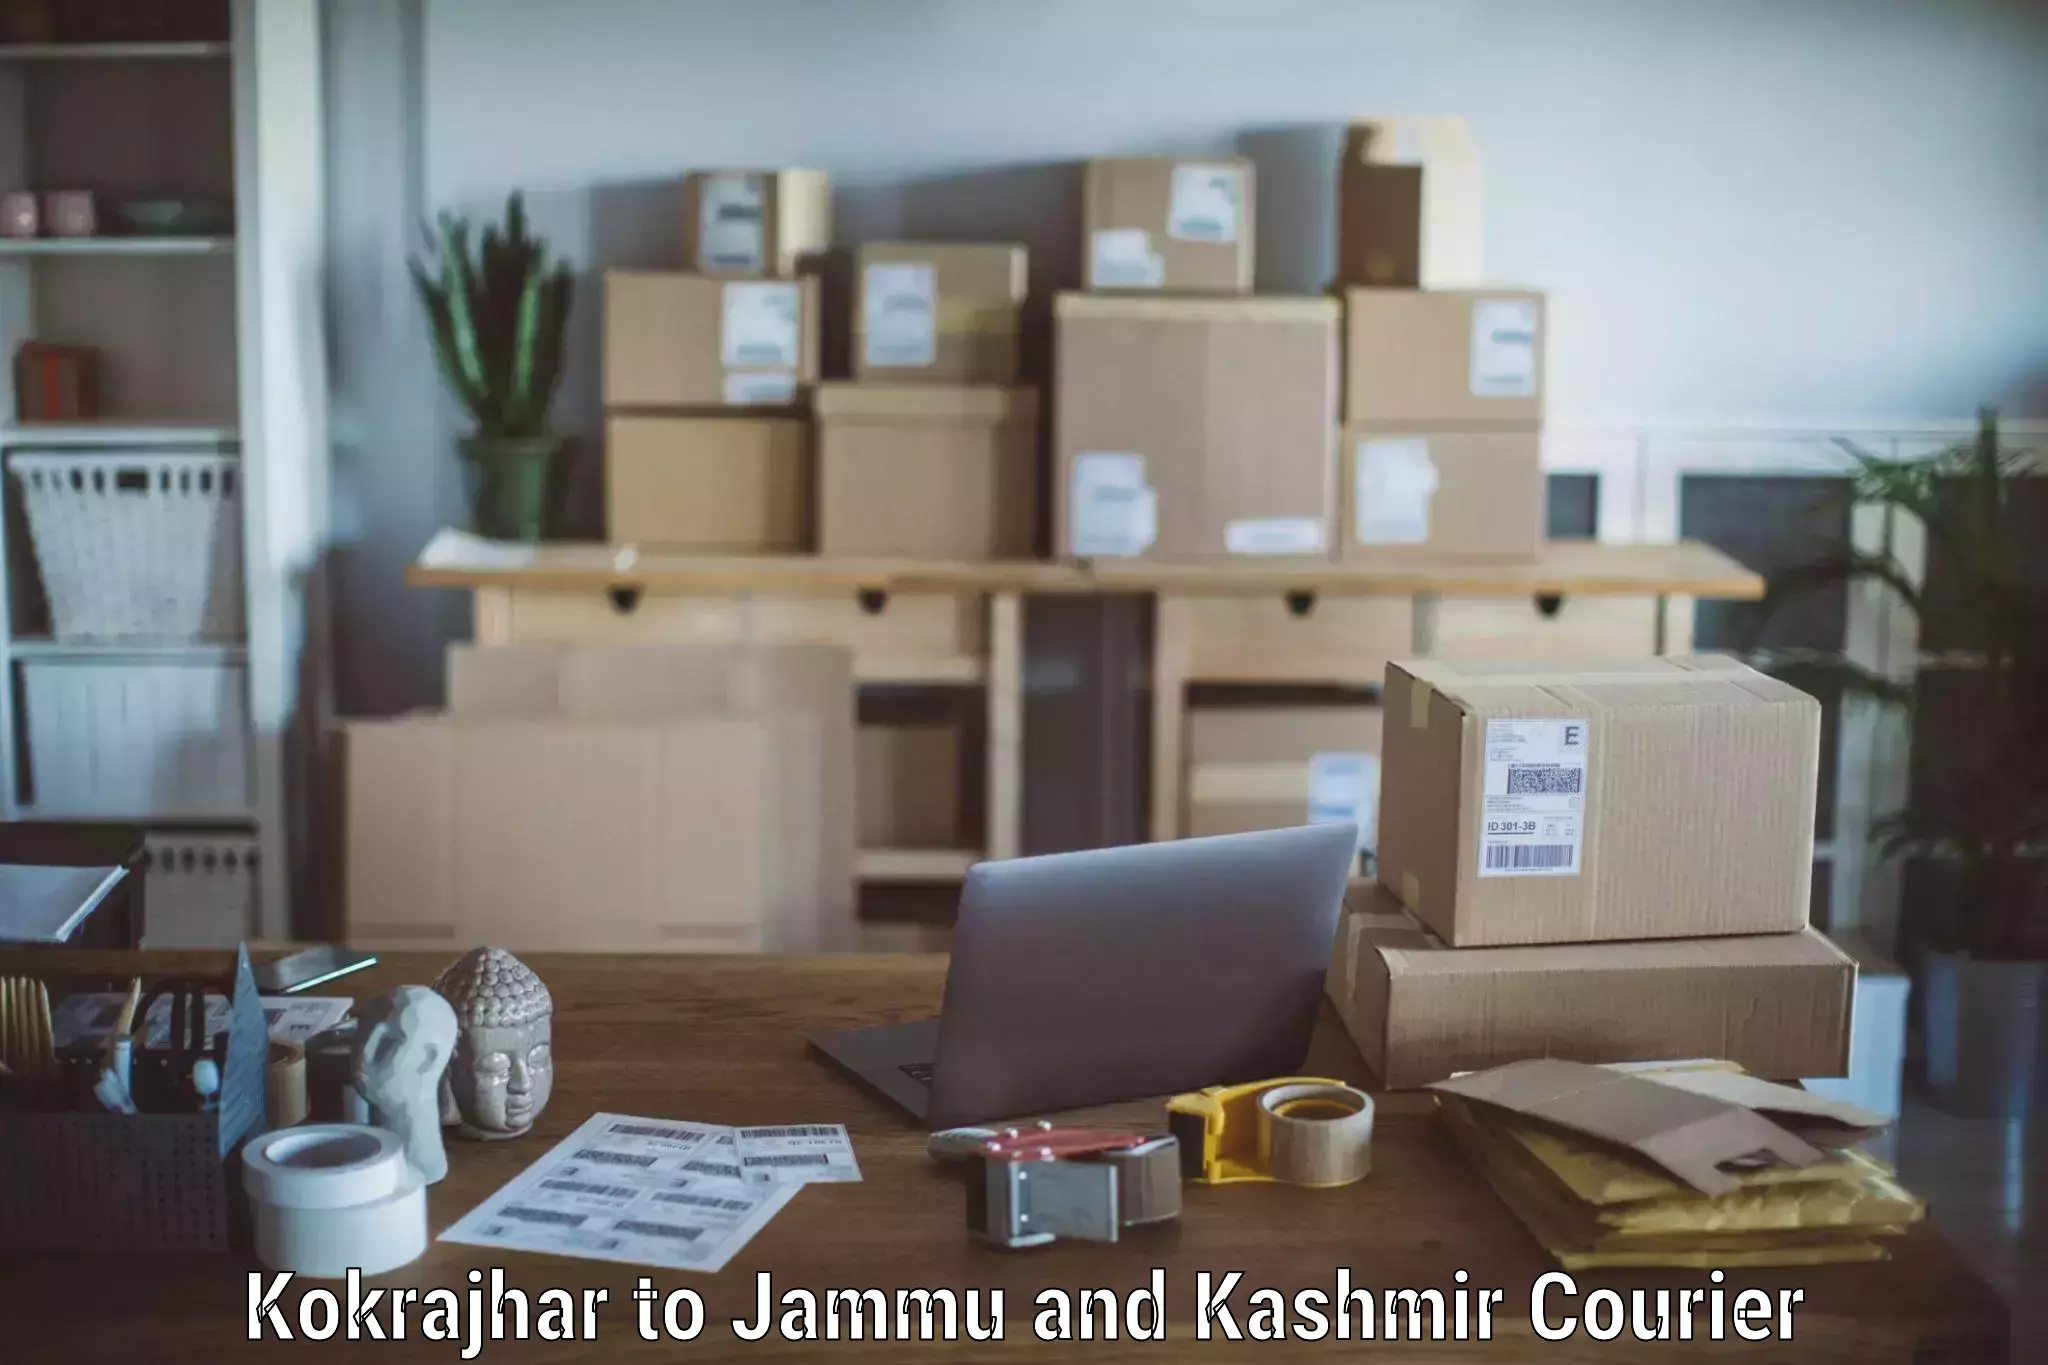 Furniture delivery service Kokrajhar to Shopian